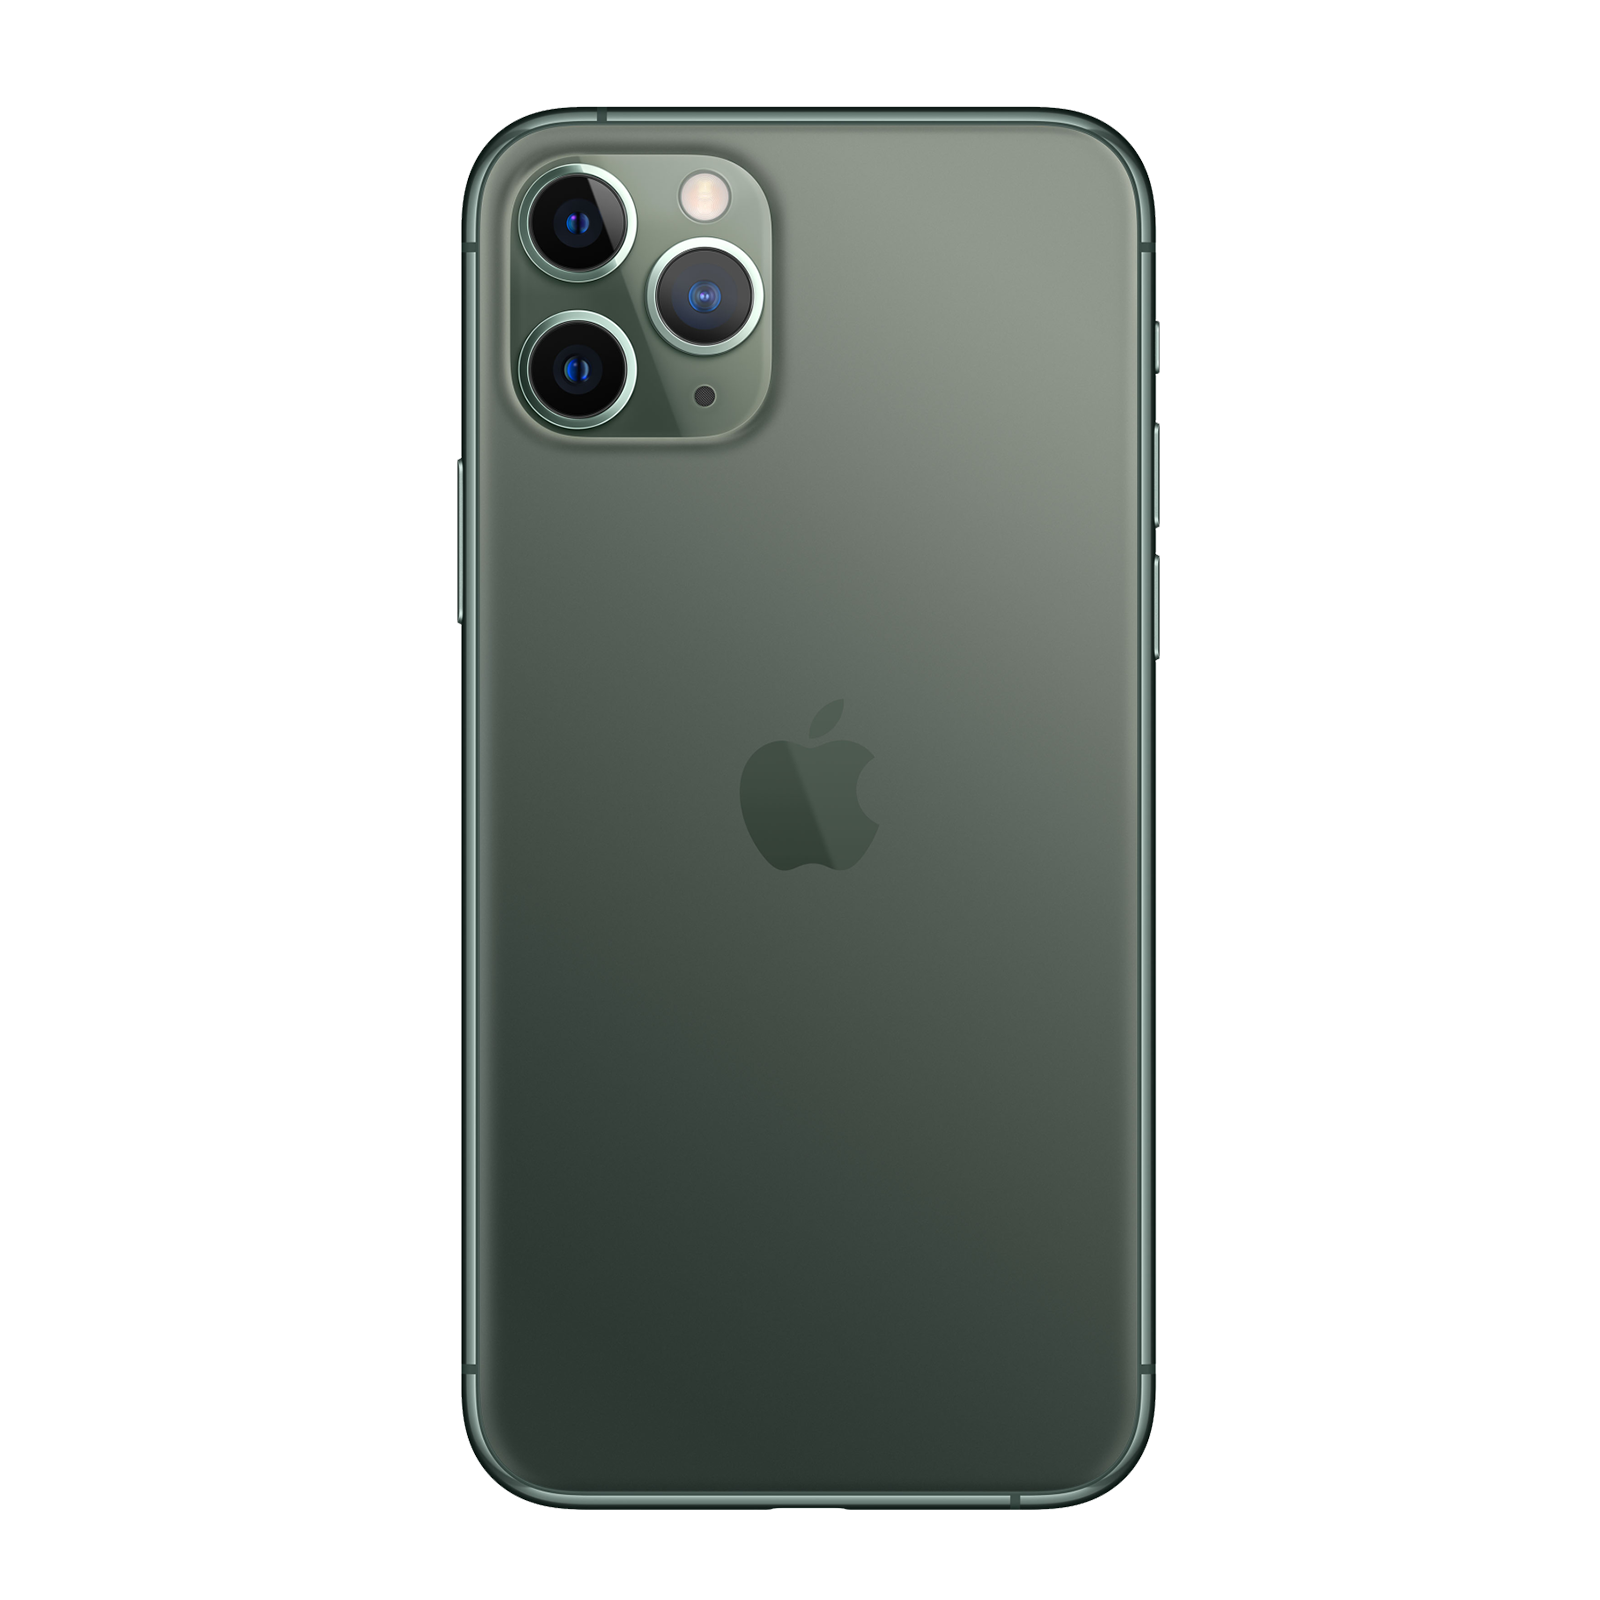 Apple iPhone 11 Pro Max 64GB Midnight Green Good - AT&T